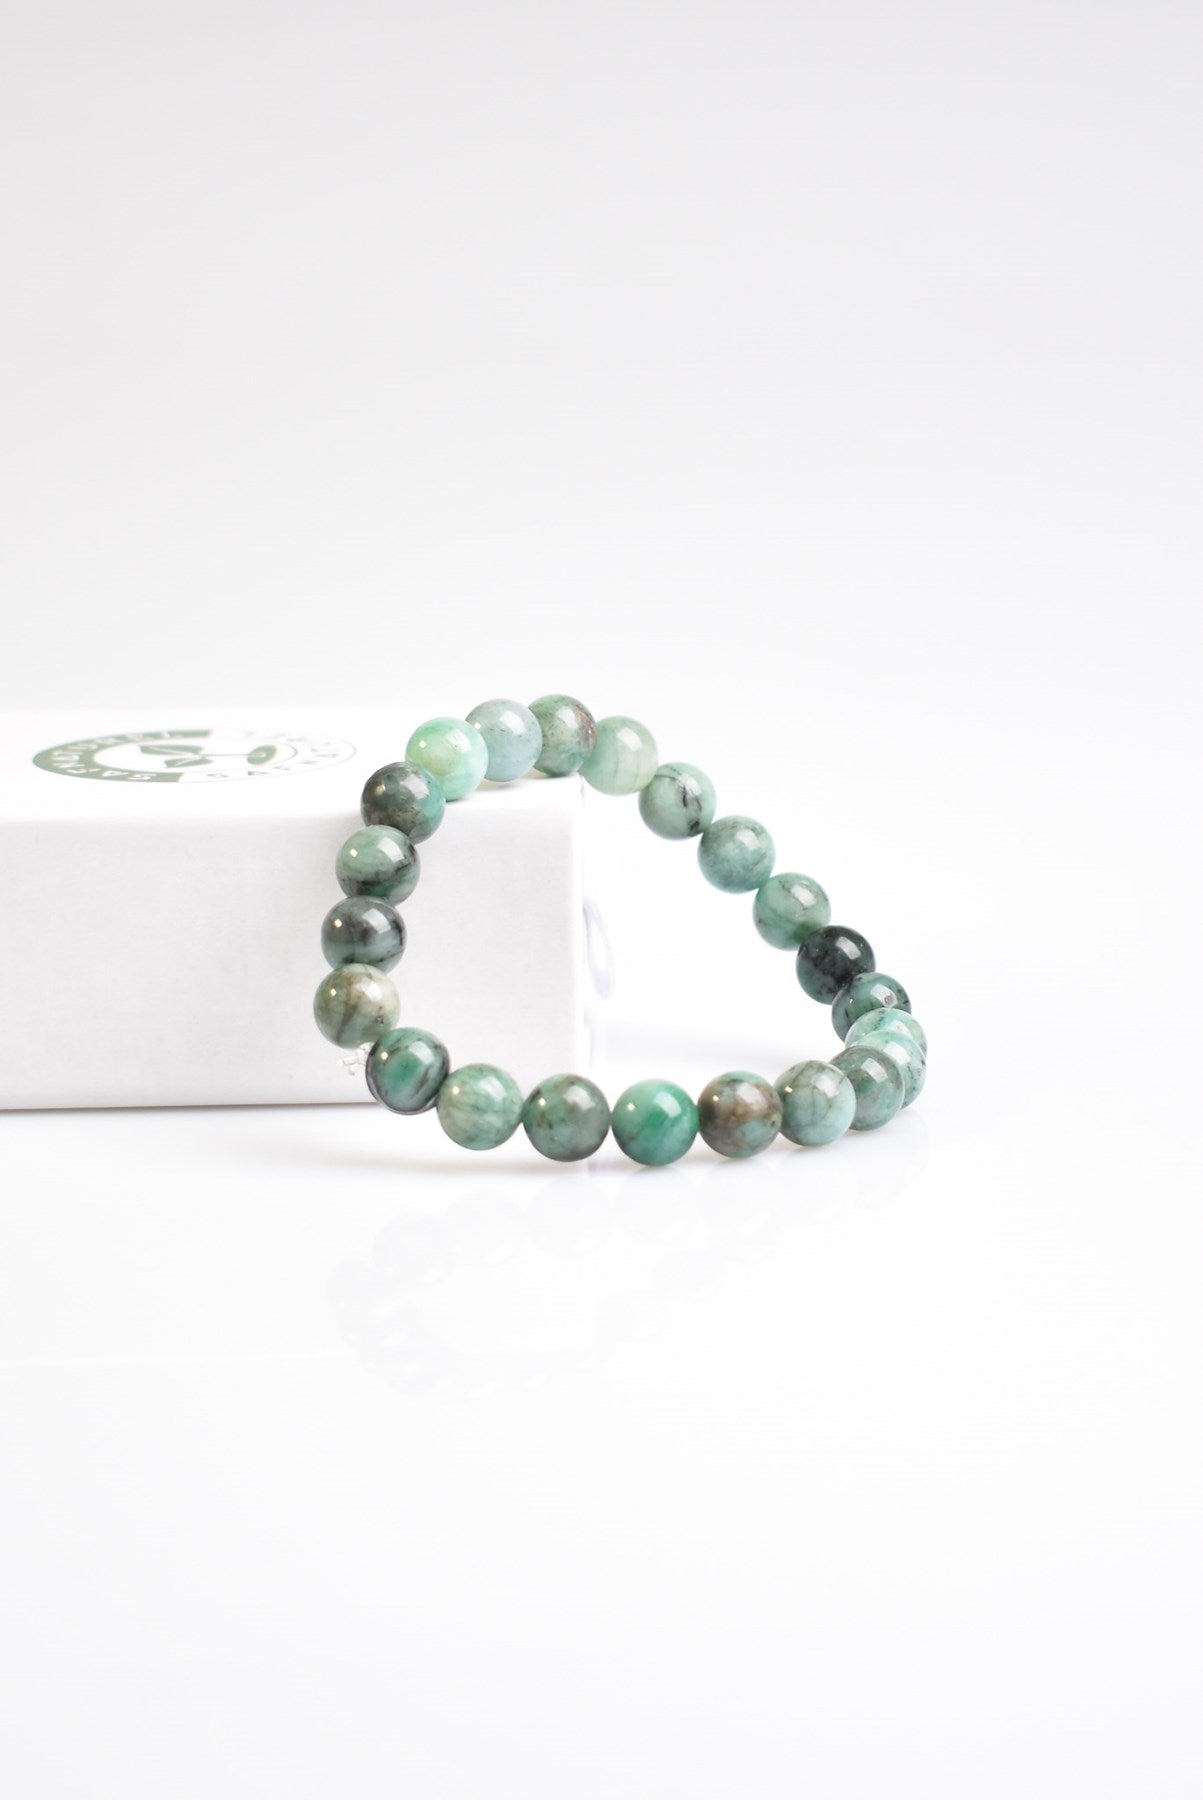 Emerald Natural Gemstone Bracelet 8mm